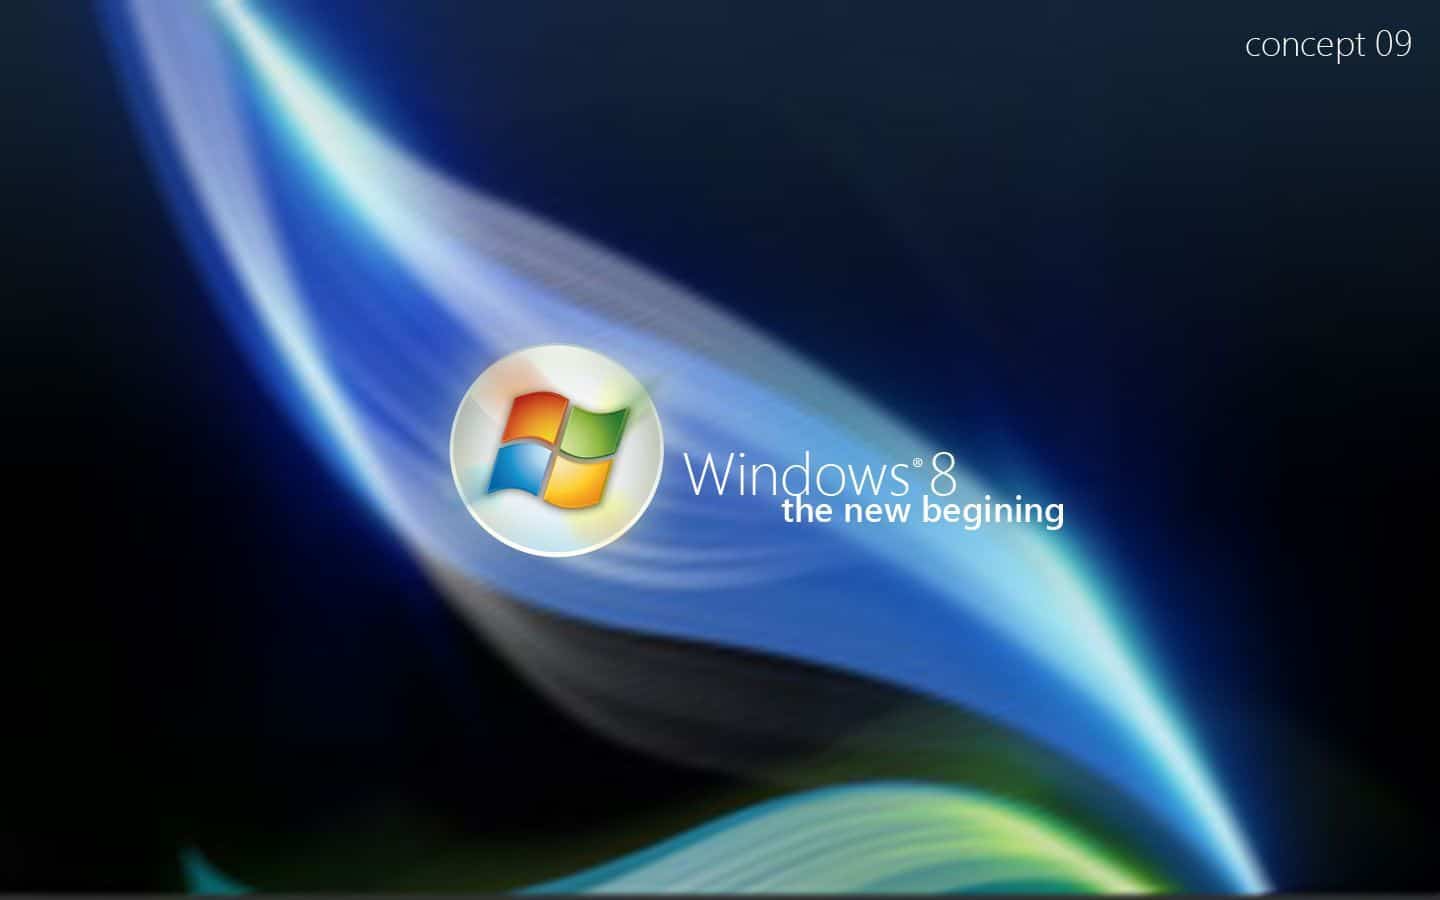 Windows 8 lanzamiento oficial